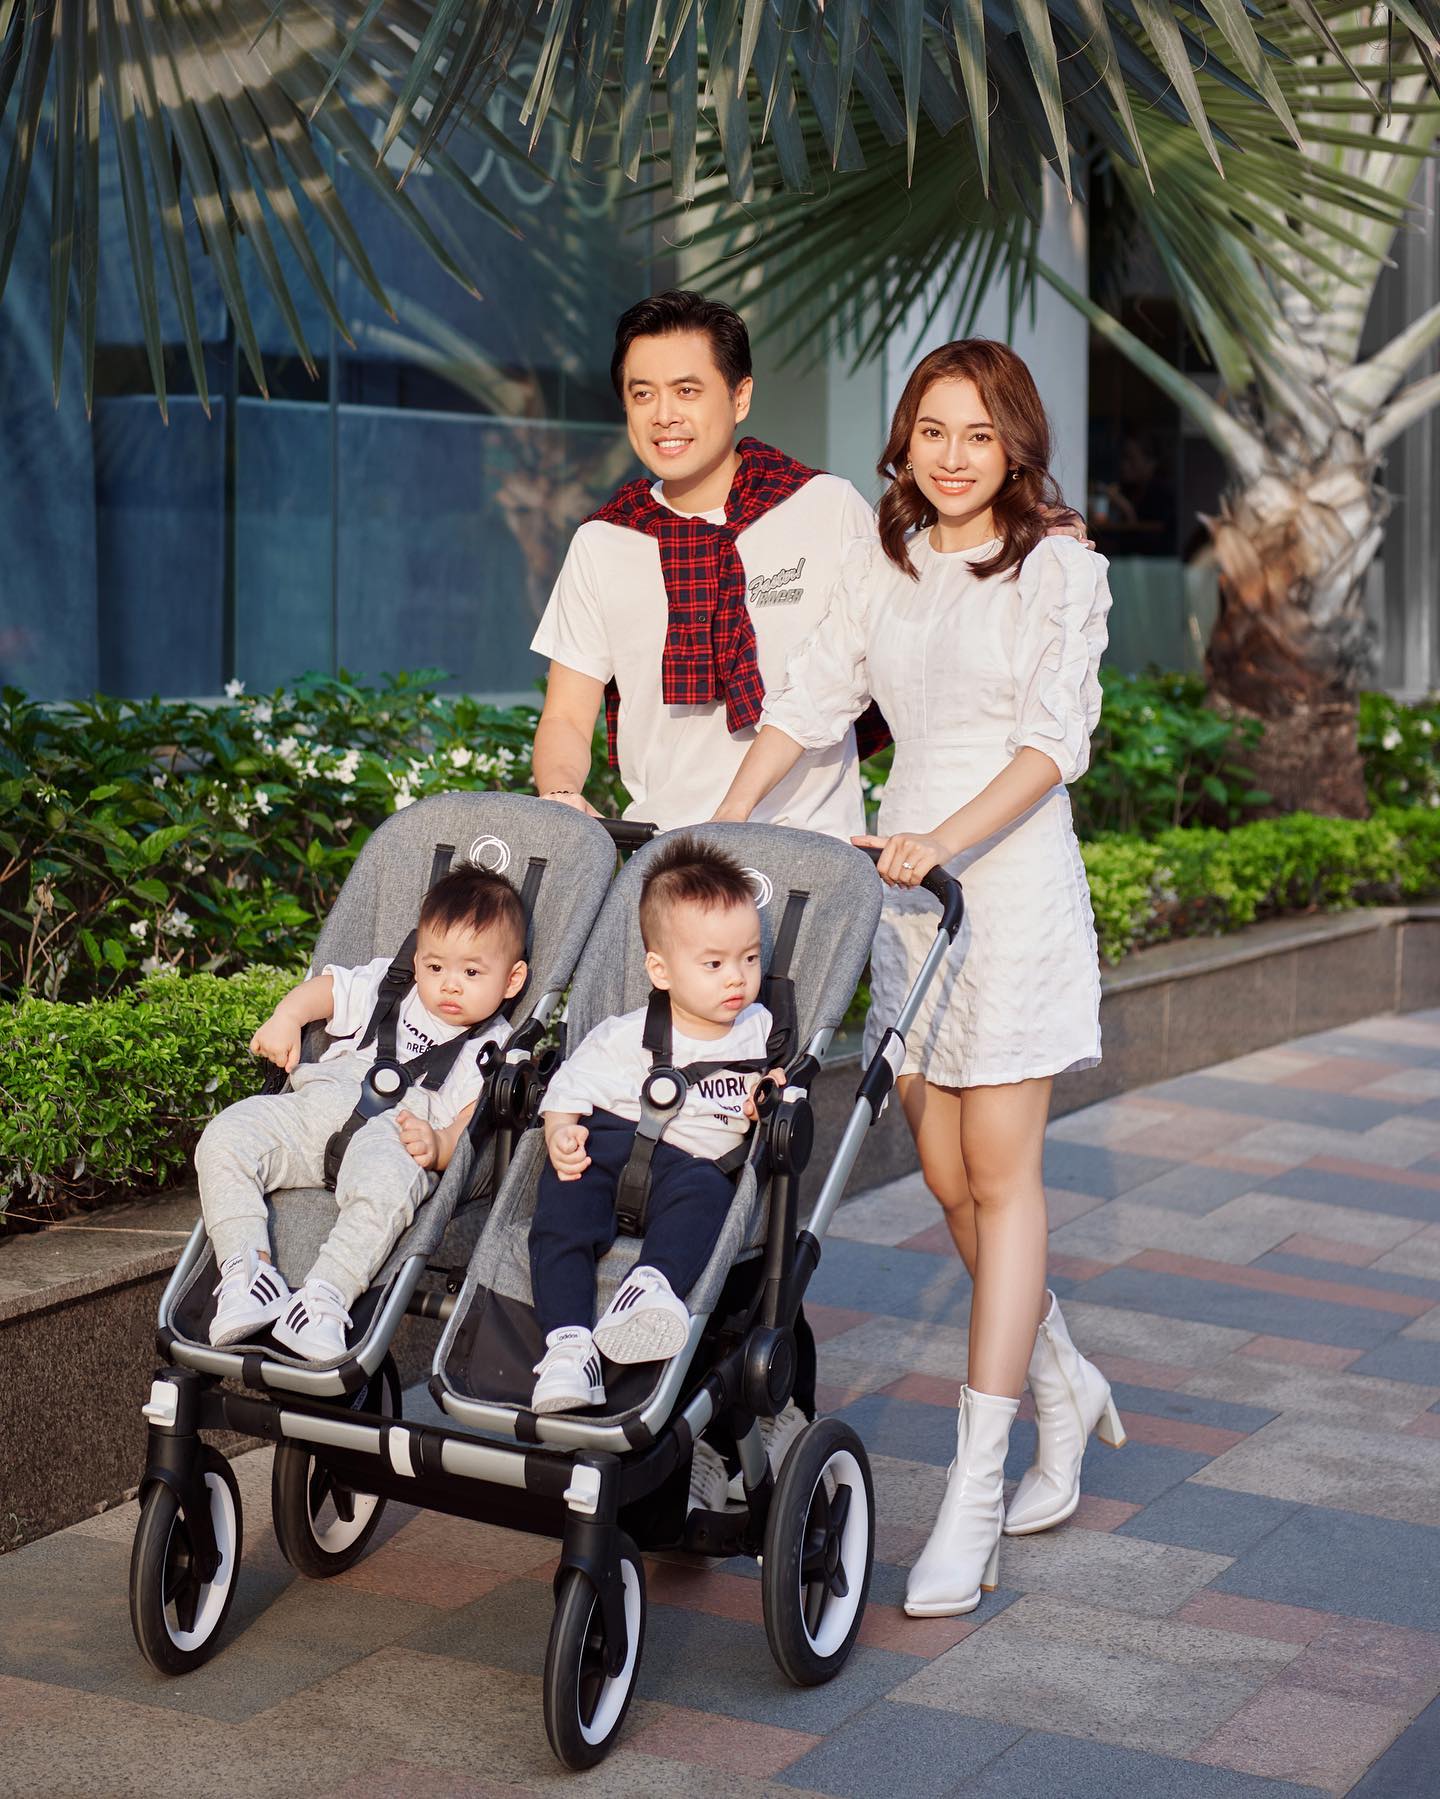 Sara Lưu và ông xã Dương Khắc Linh đưa hai con Mickey và Jerry dạo phố chiều cuối tuần. Gia đình 4 thành viên nhận được nhiều lời khen nhờ sự hạnh phúc, ngọt ngào.